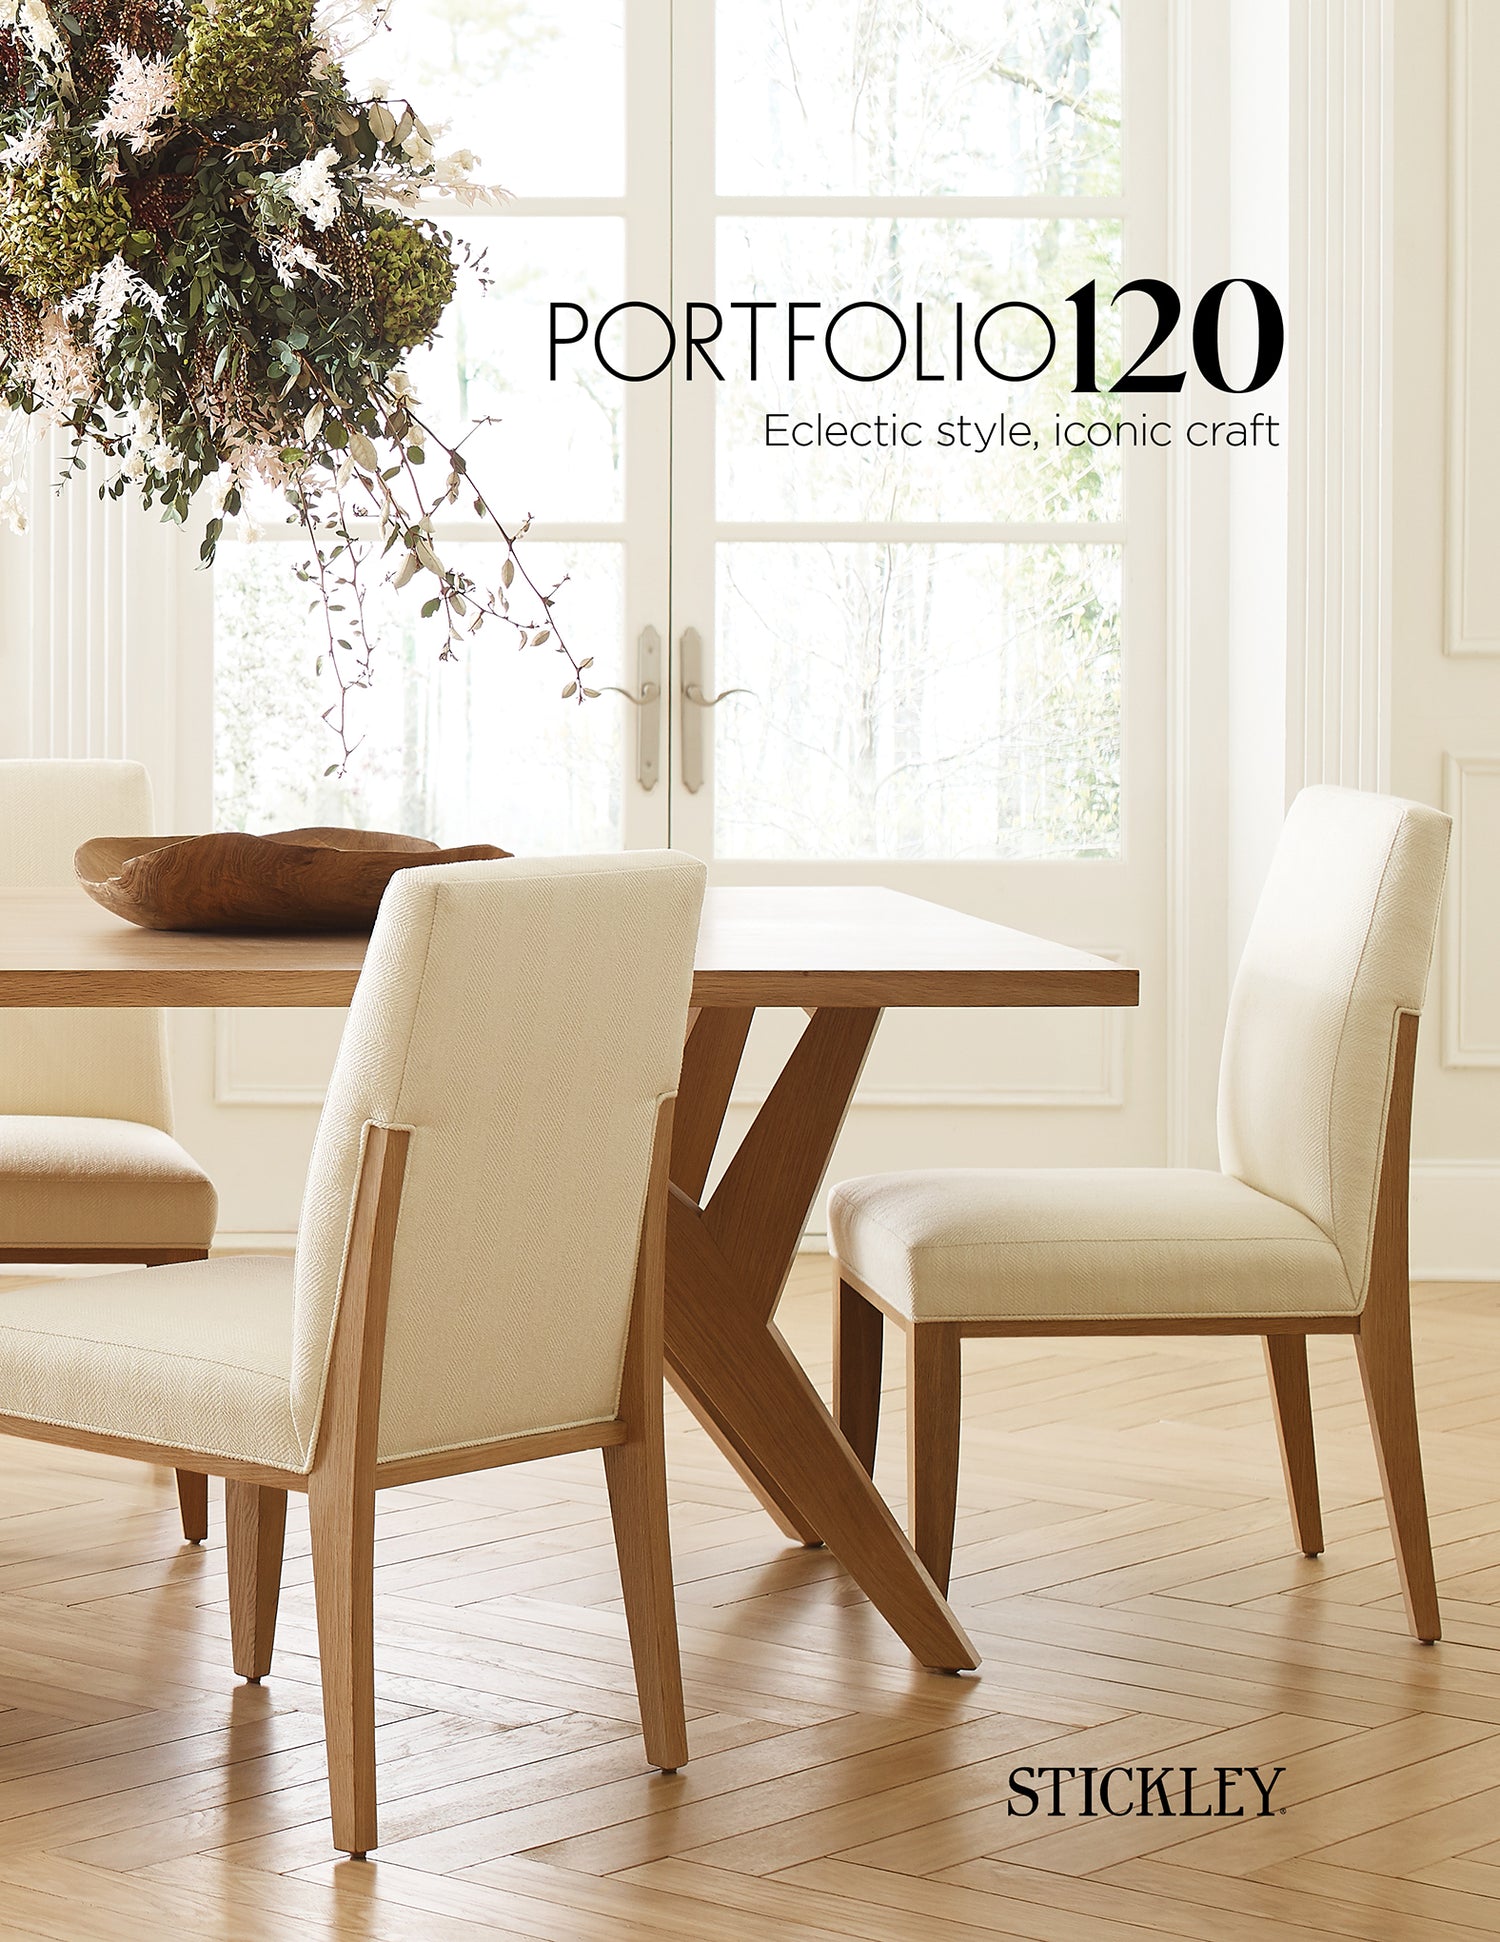 Portfolio120 Catalog - Stickley Brand